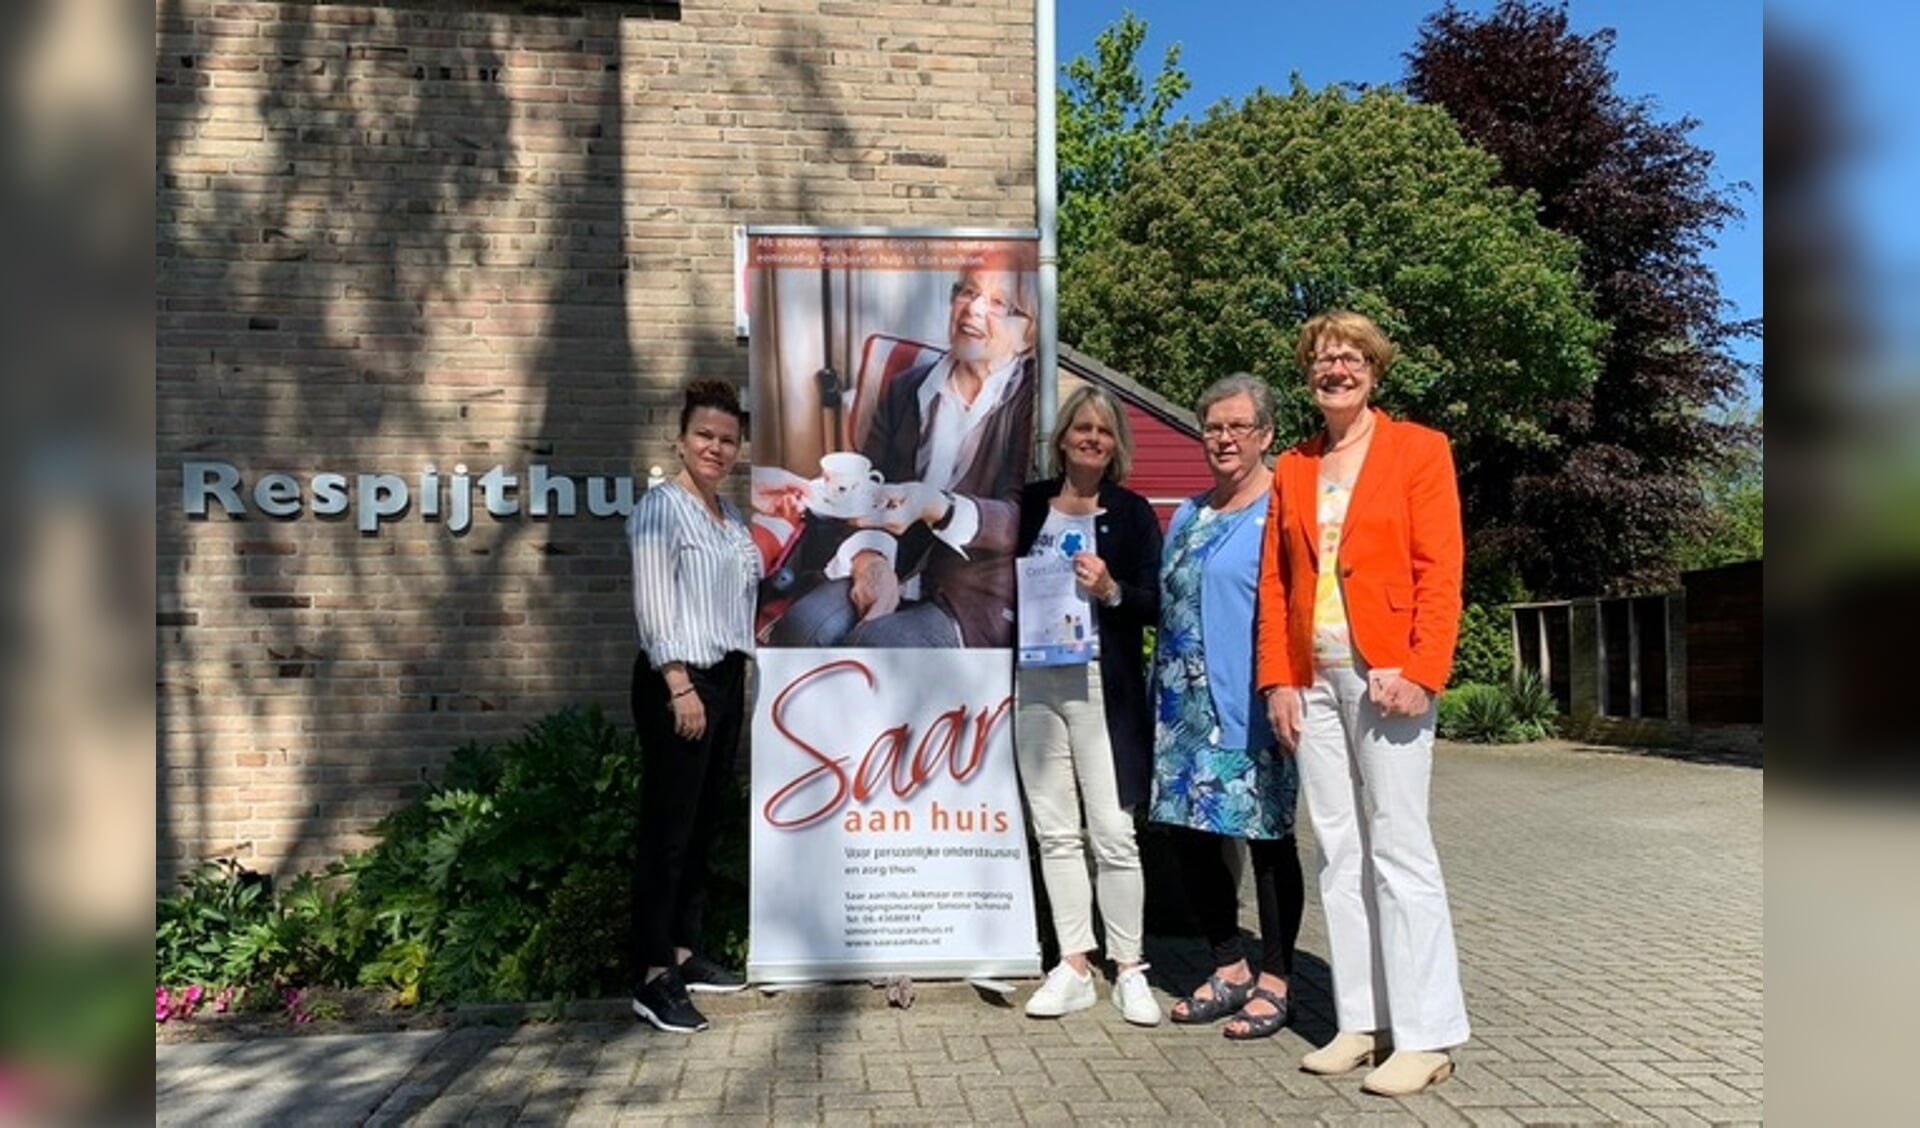 Petra Oxfoort ( Respijthuis), Simone Schmidt ( Saar aan Huis), Jeanette Streefland en Herry Booij-Dijksterhuis van de afdeling Noord- Kennemerland.